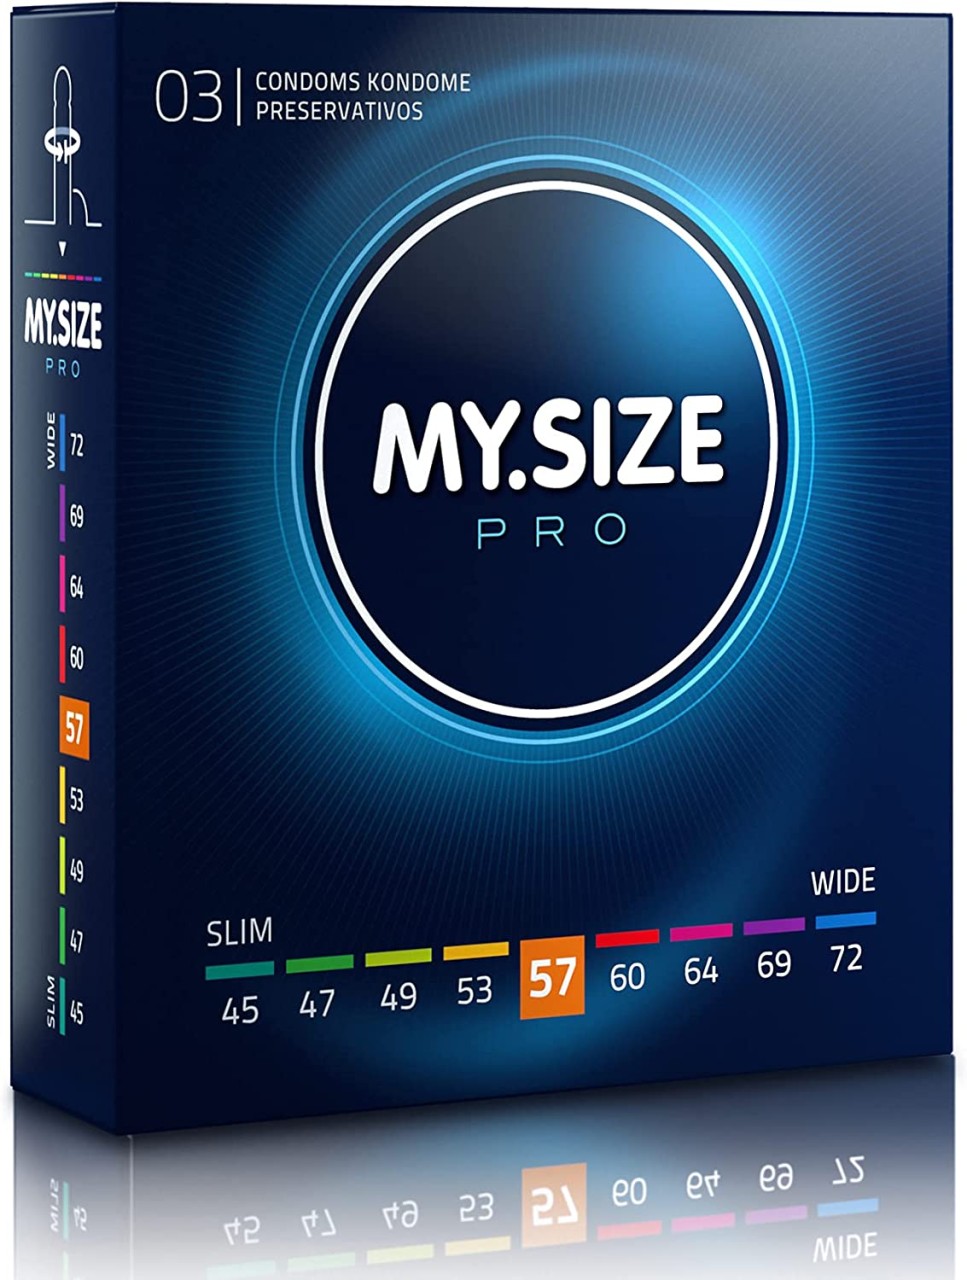 MY.SIZE PRO 57 (36 Kondome) - vergleichen und günstig kaufen